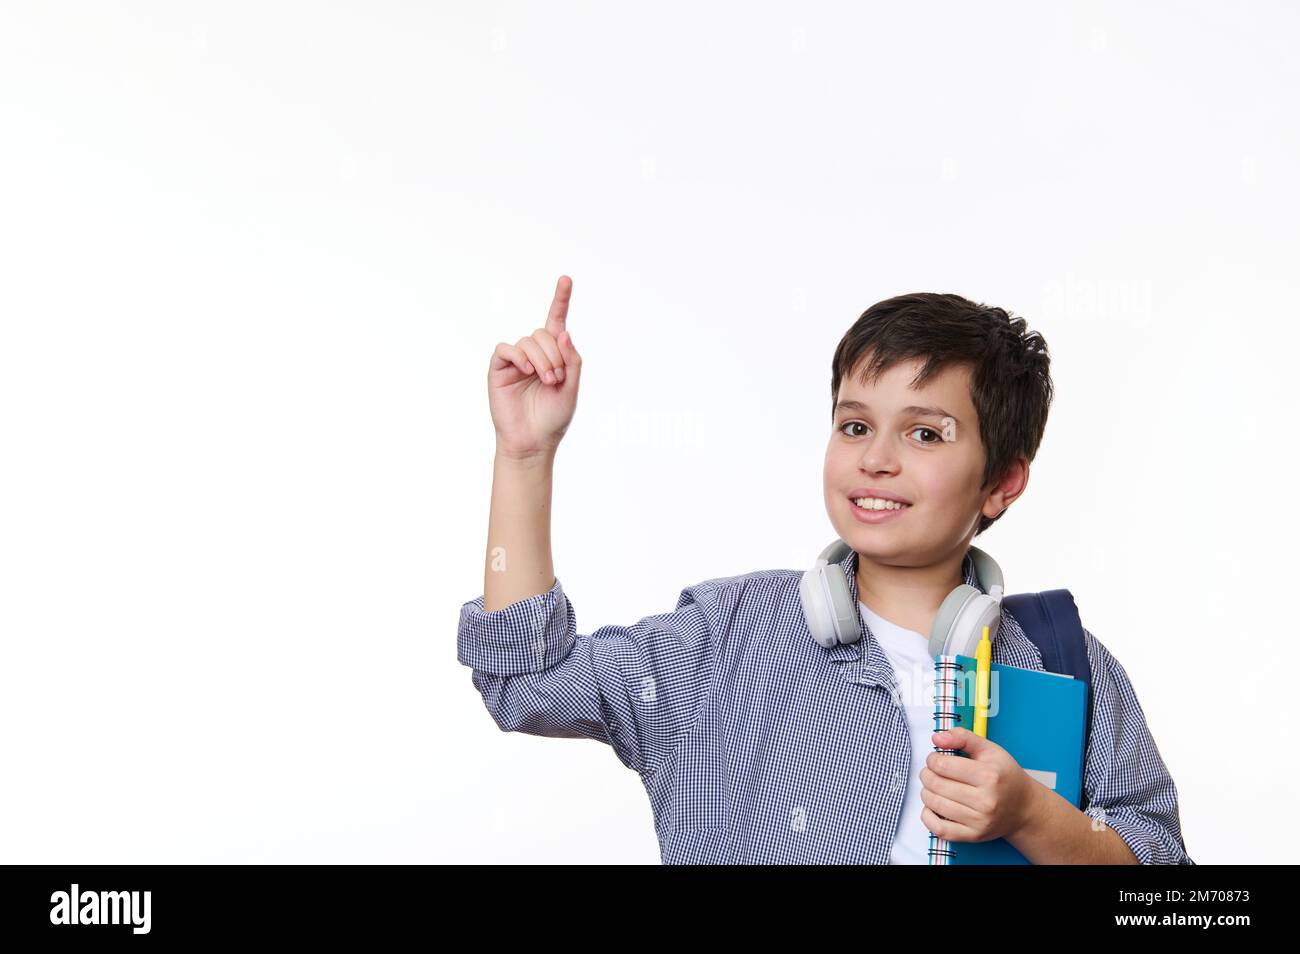 Adolescent du Moyen-Orient exprimant des émotions positives, pointant vers la copie espace publicitaire, fond blanc Banque D'Images